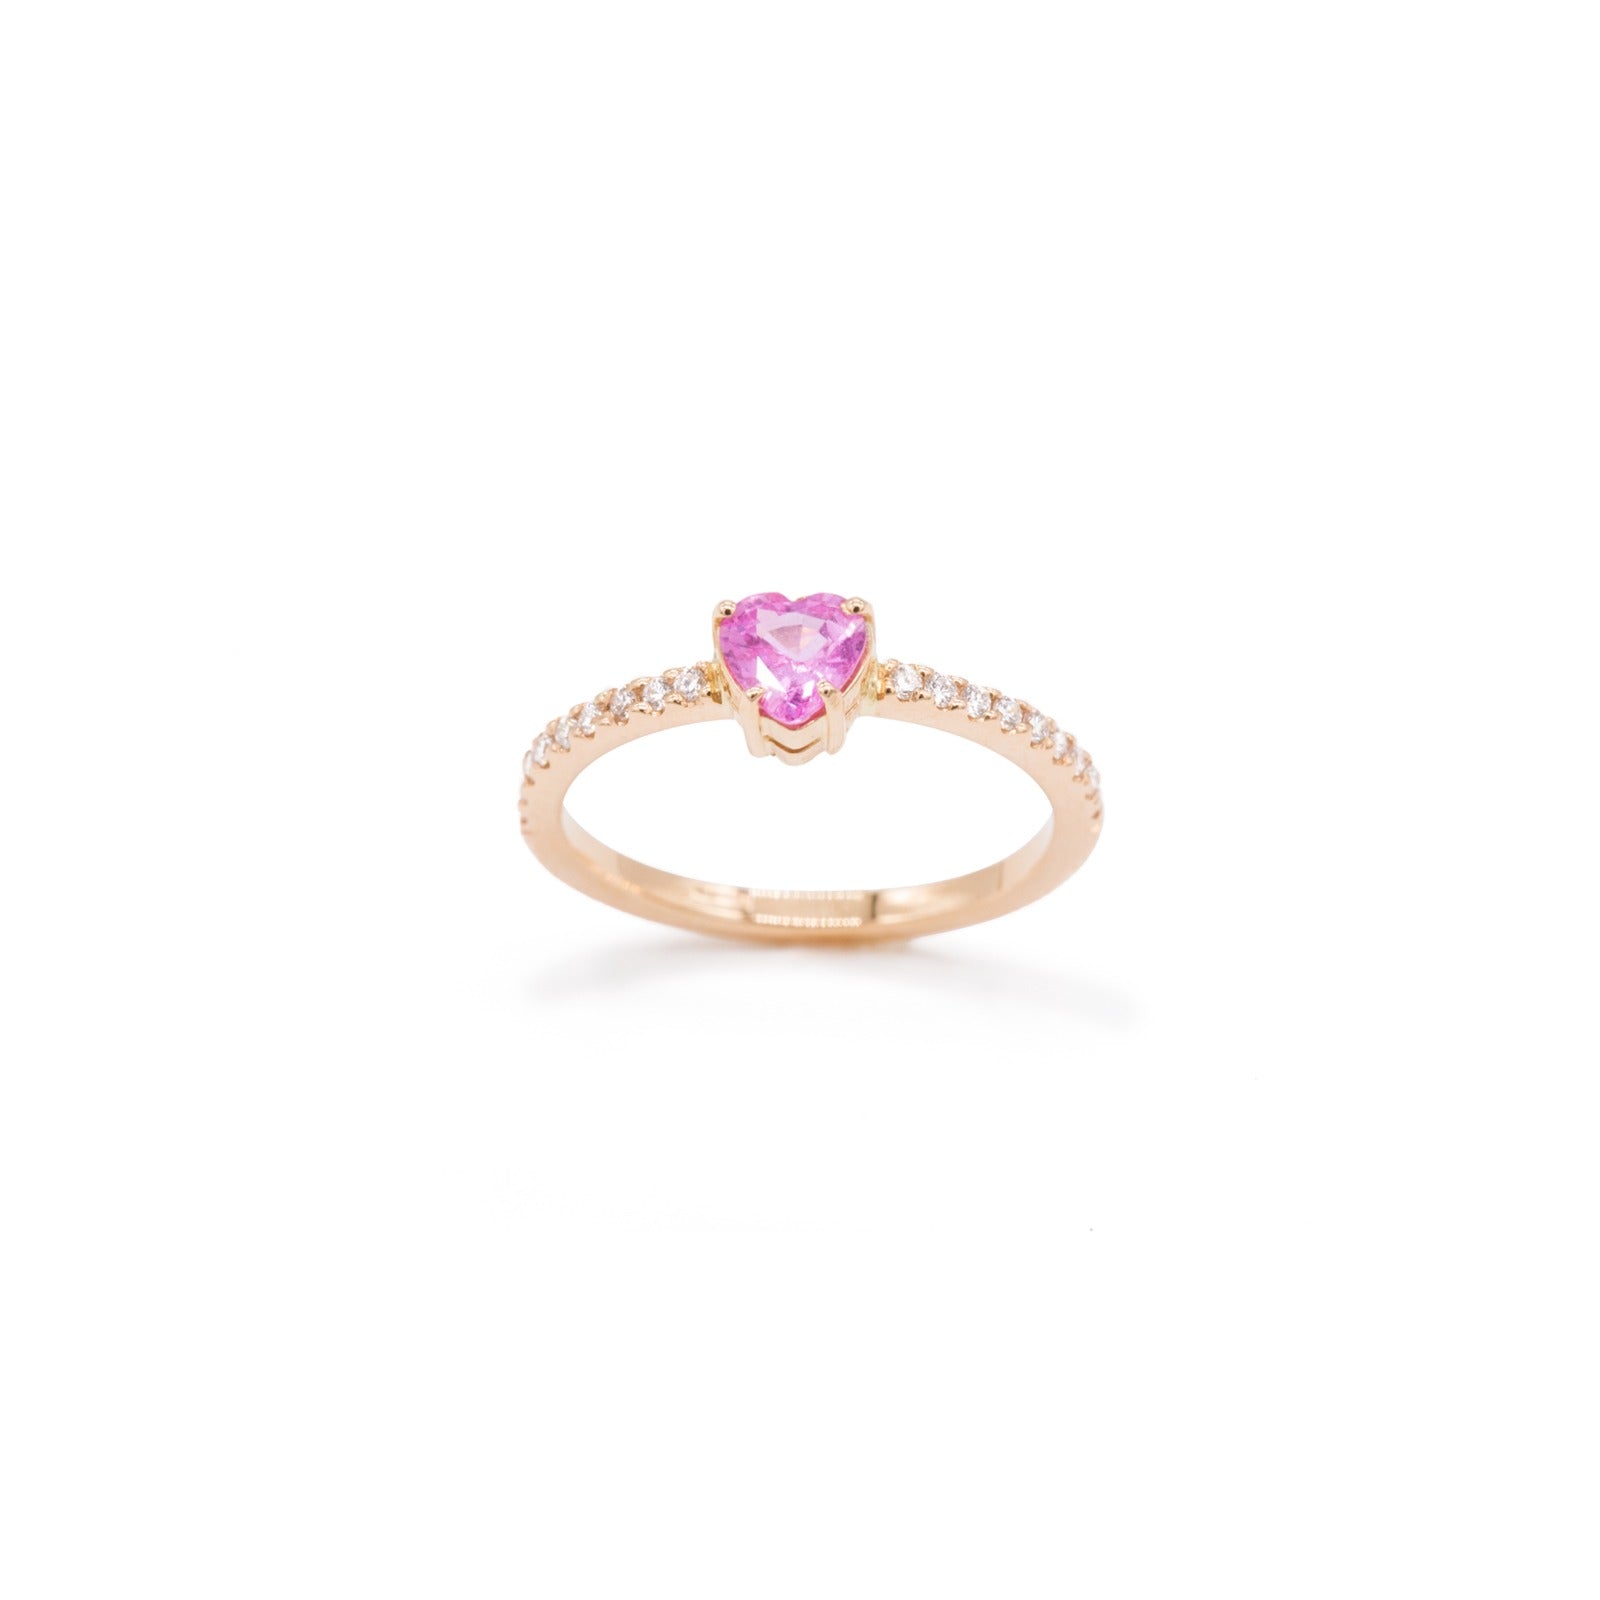 Heart cut pink sapphire ring